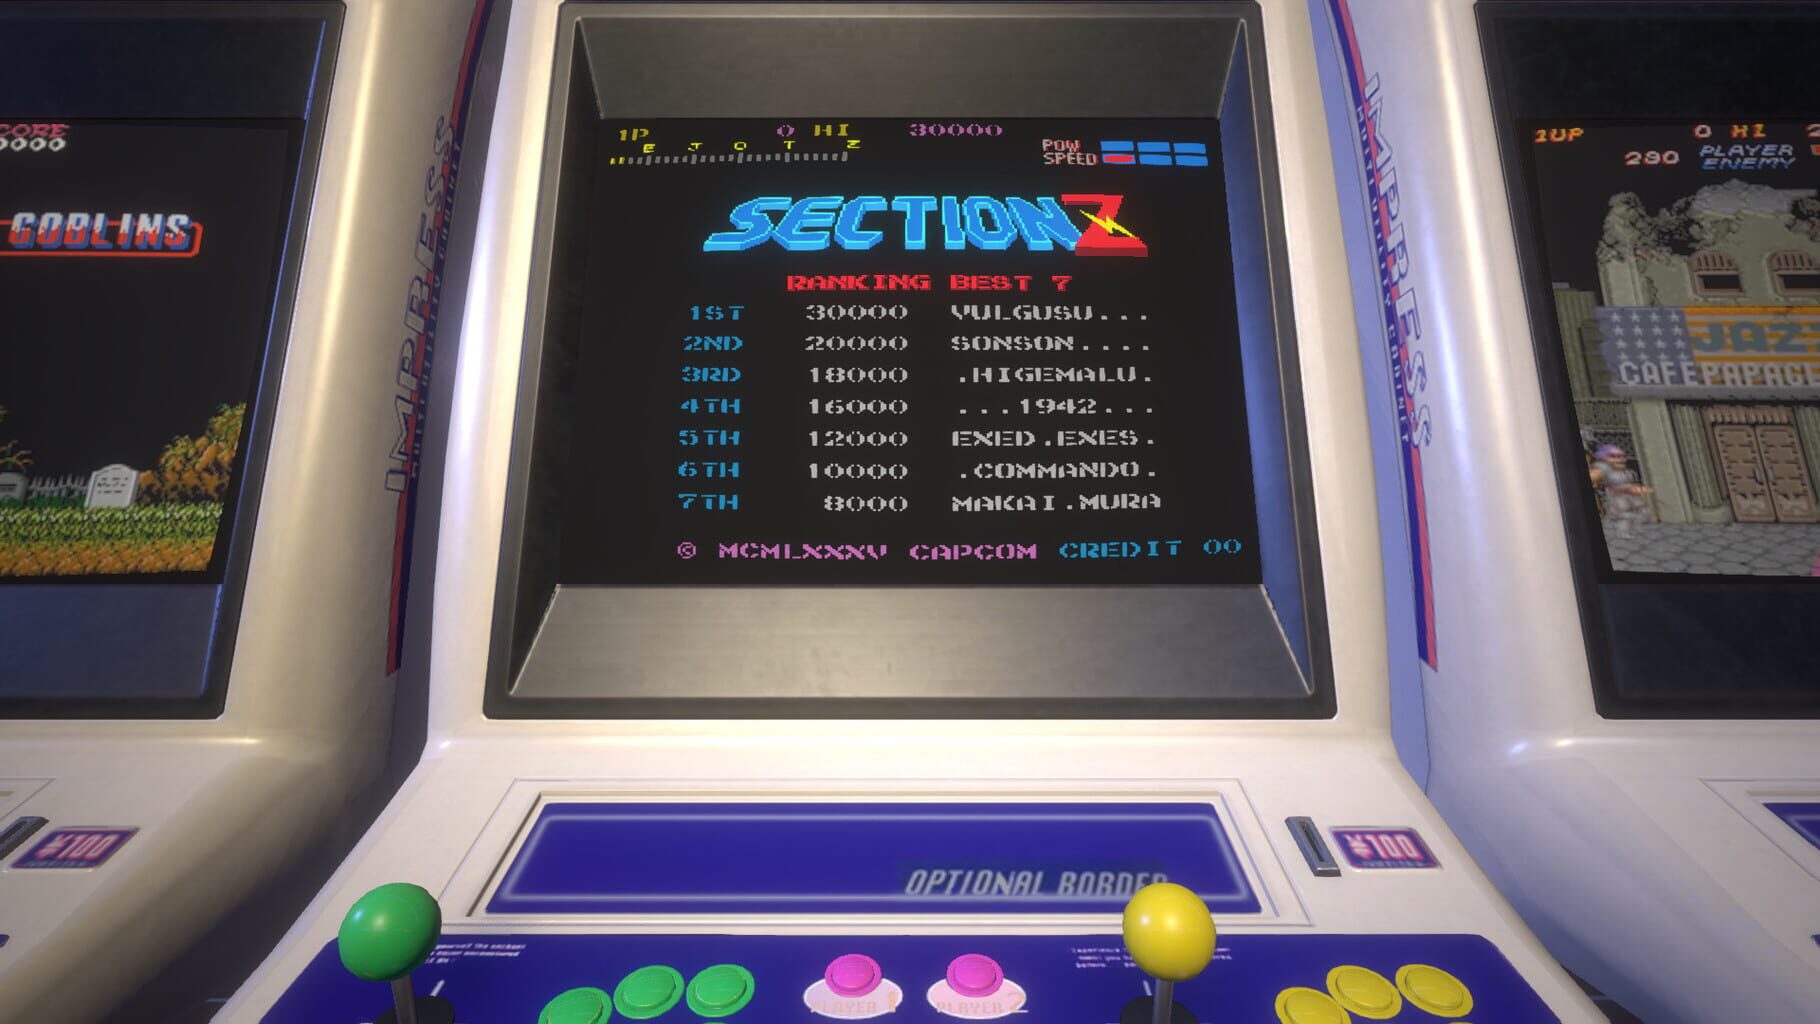 Capcom Arcade Stadium: Section Z screenshot